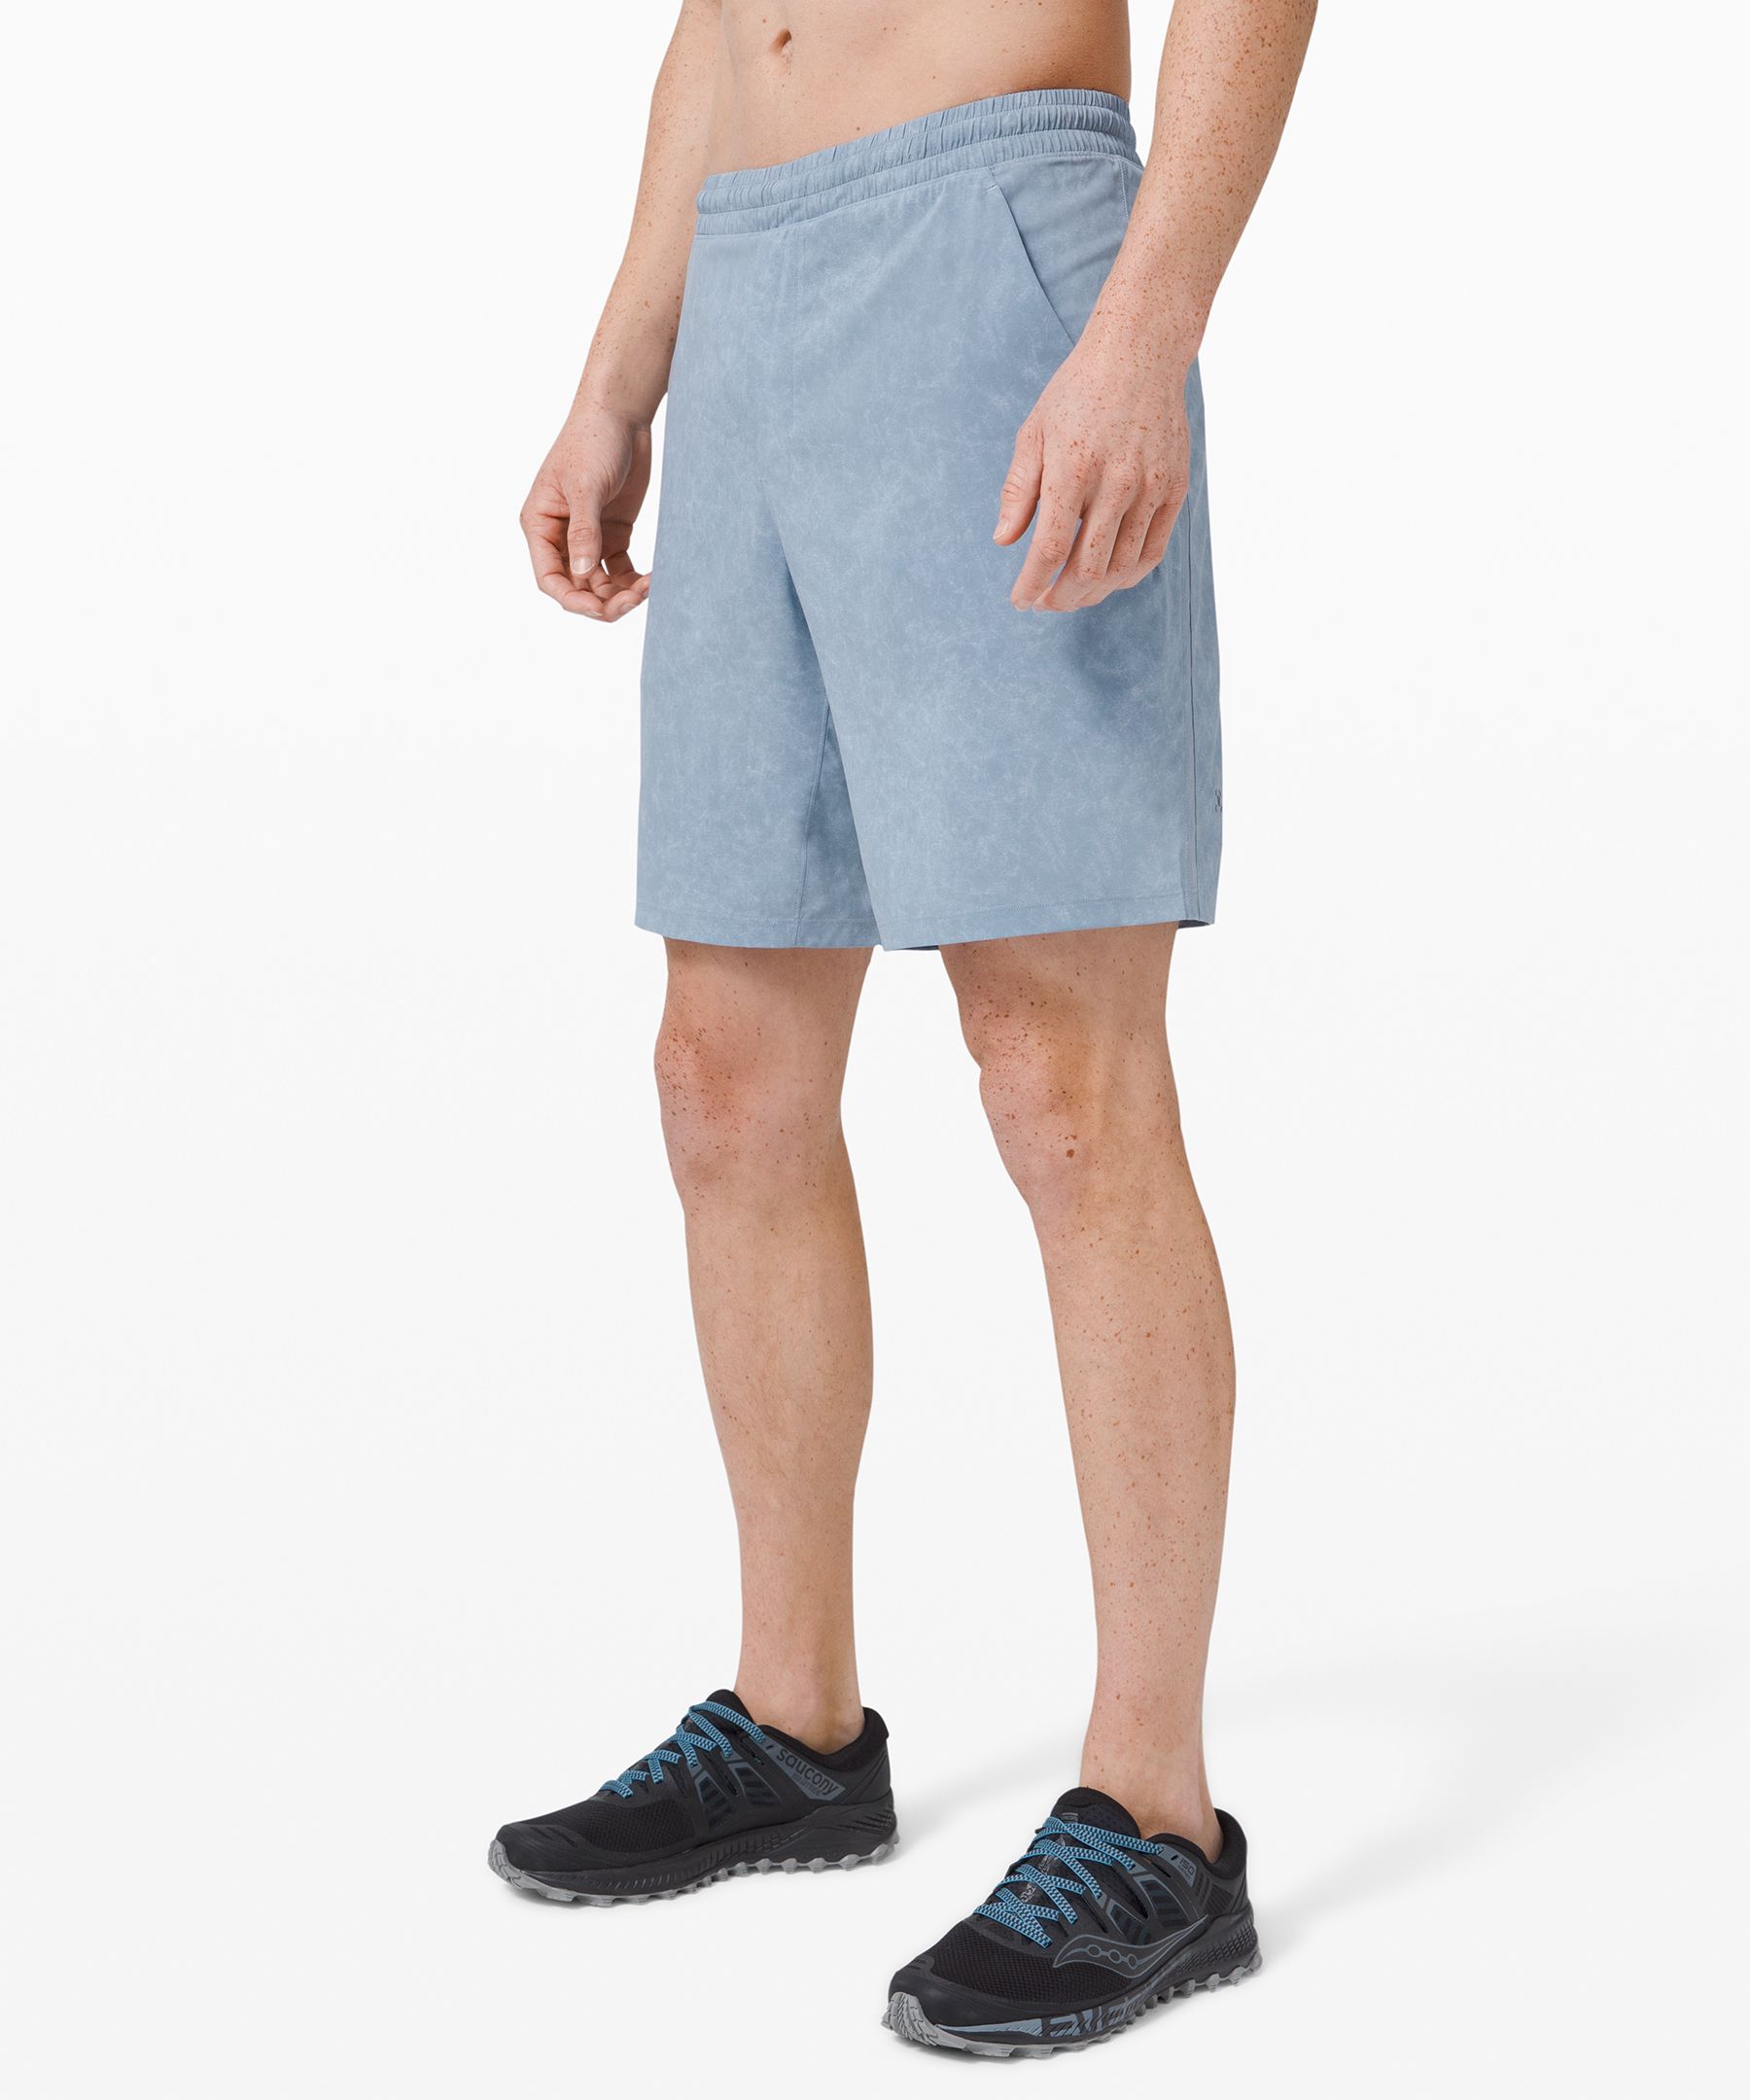 lululemon 2 in 1 shorts